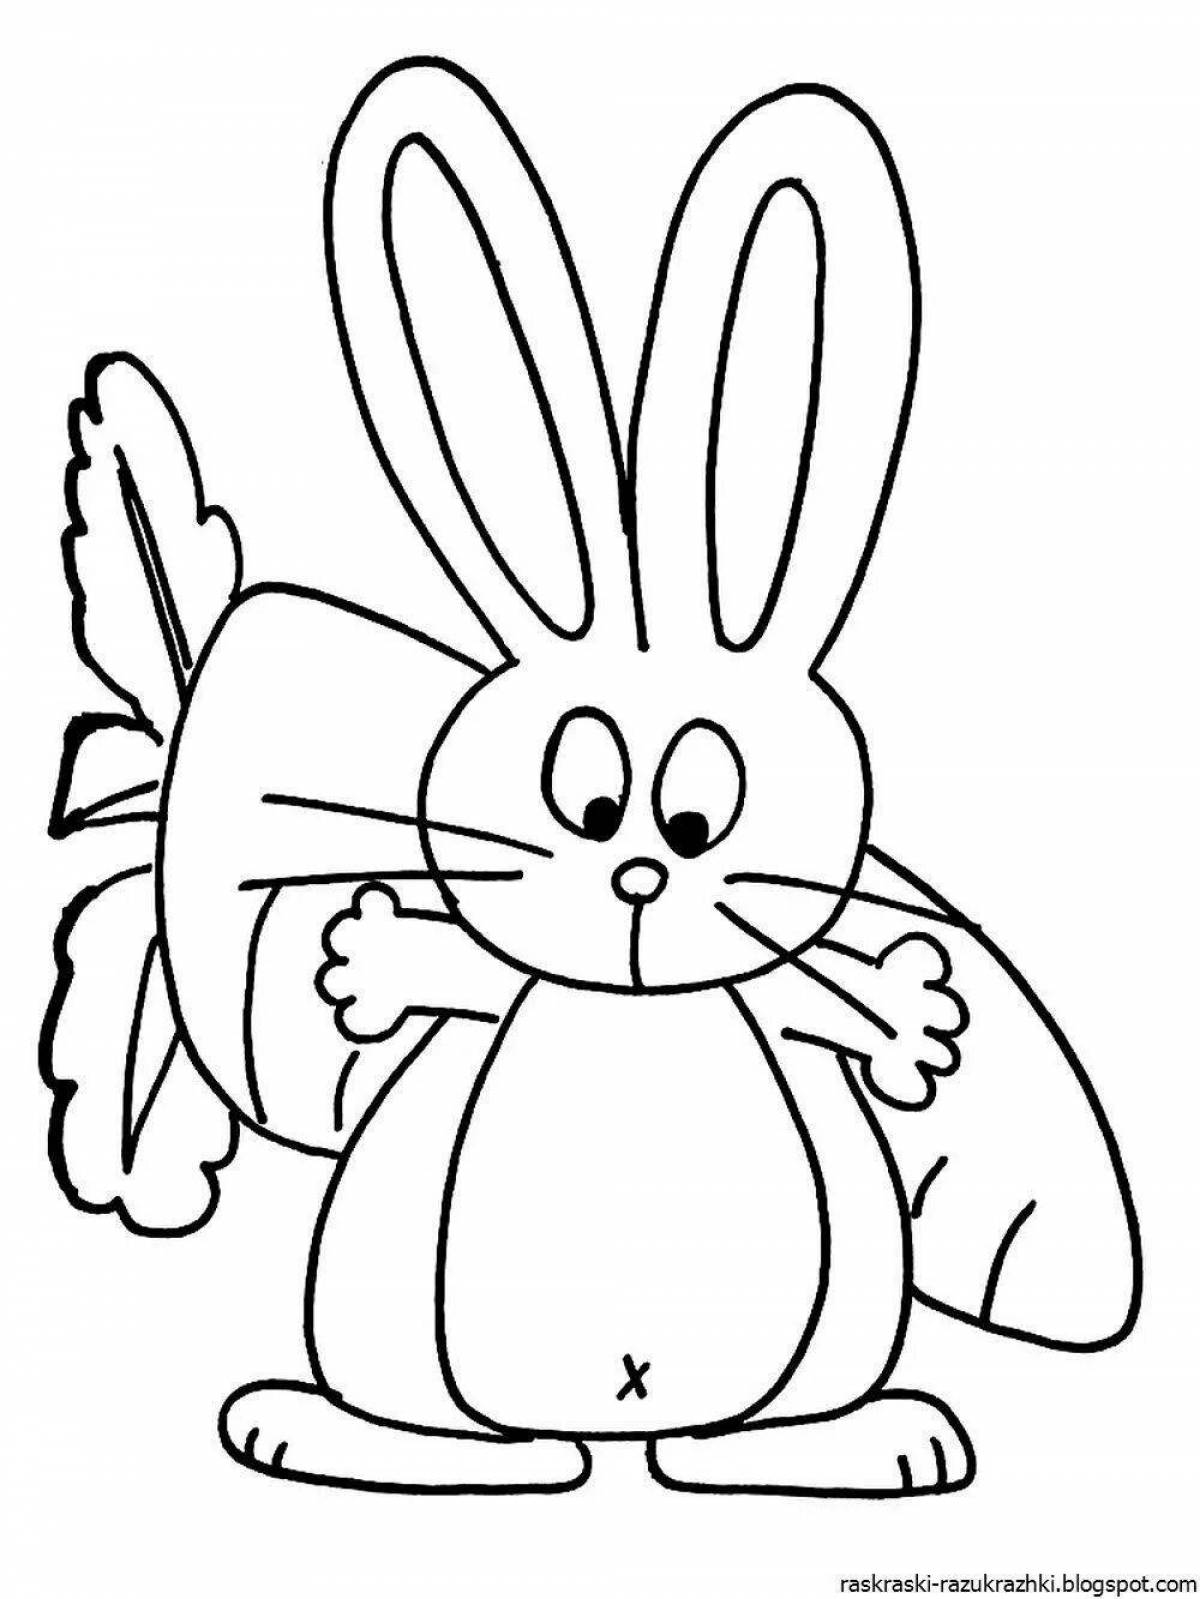 Радостная раскраска кролик с морковкой для детей